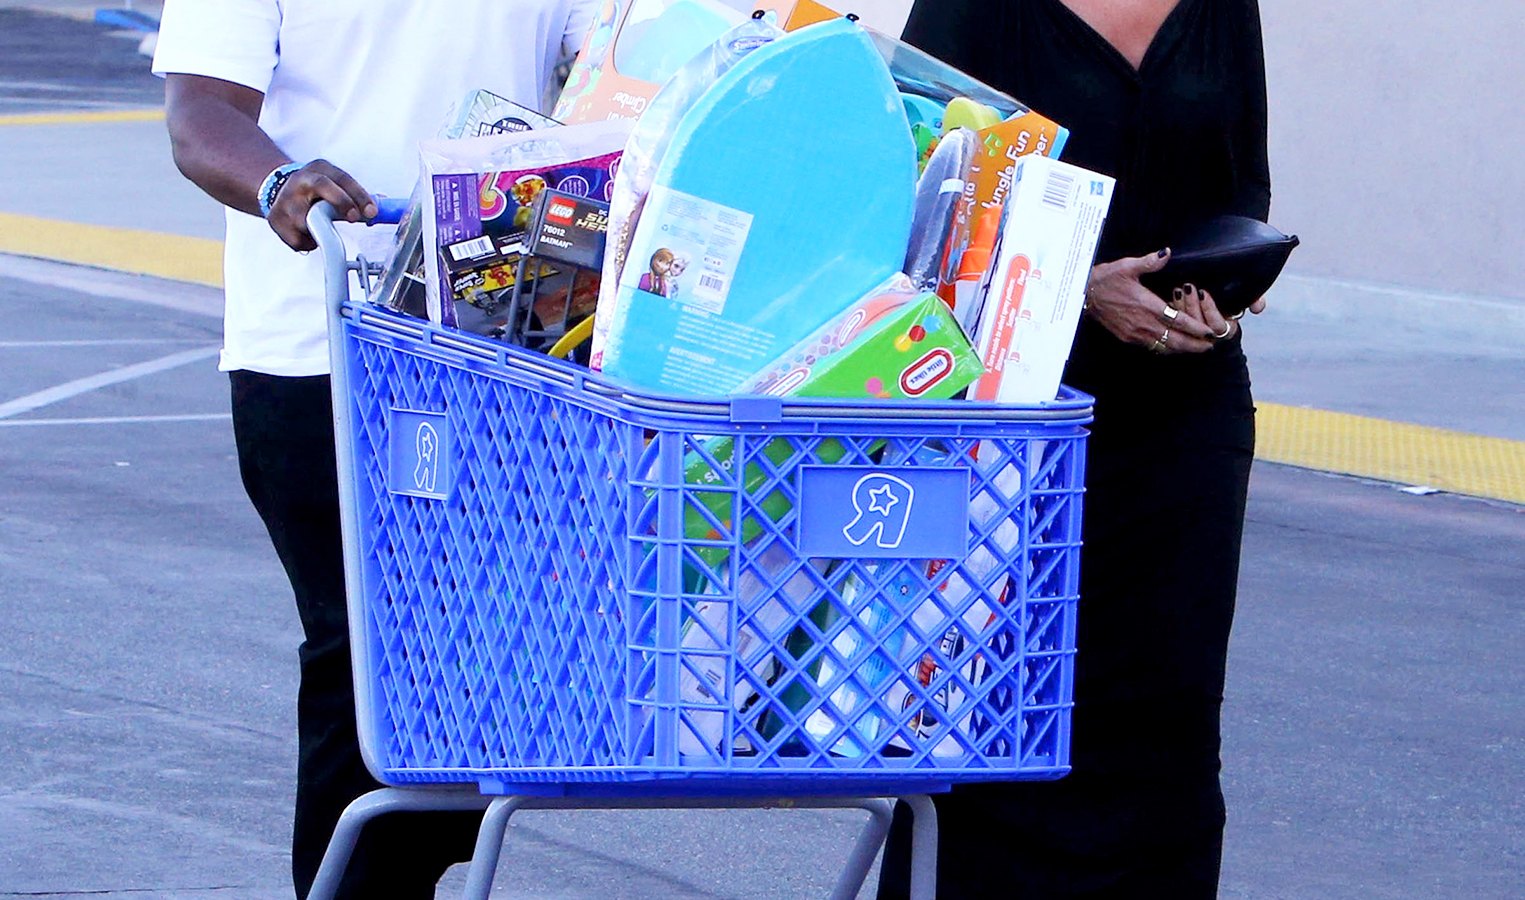 Kris Jenner & Corey Gamble shopping